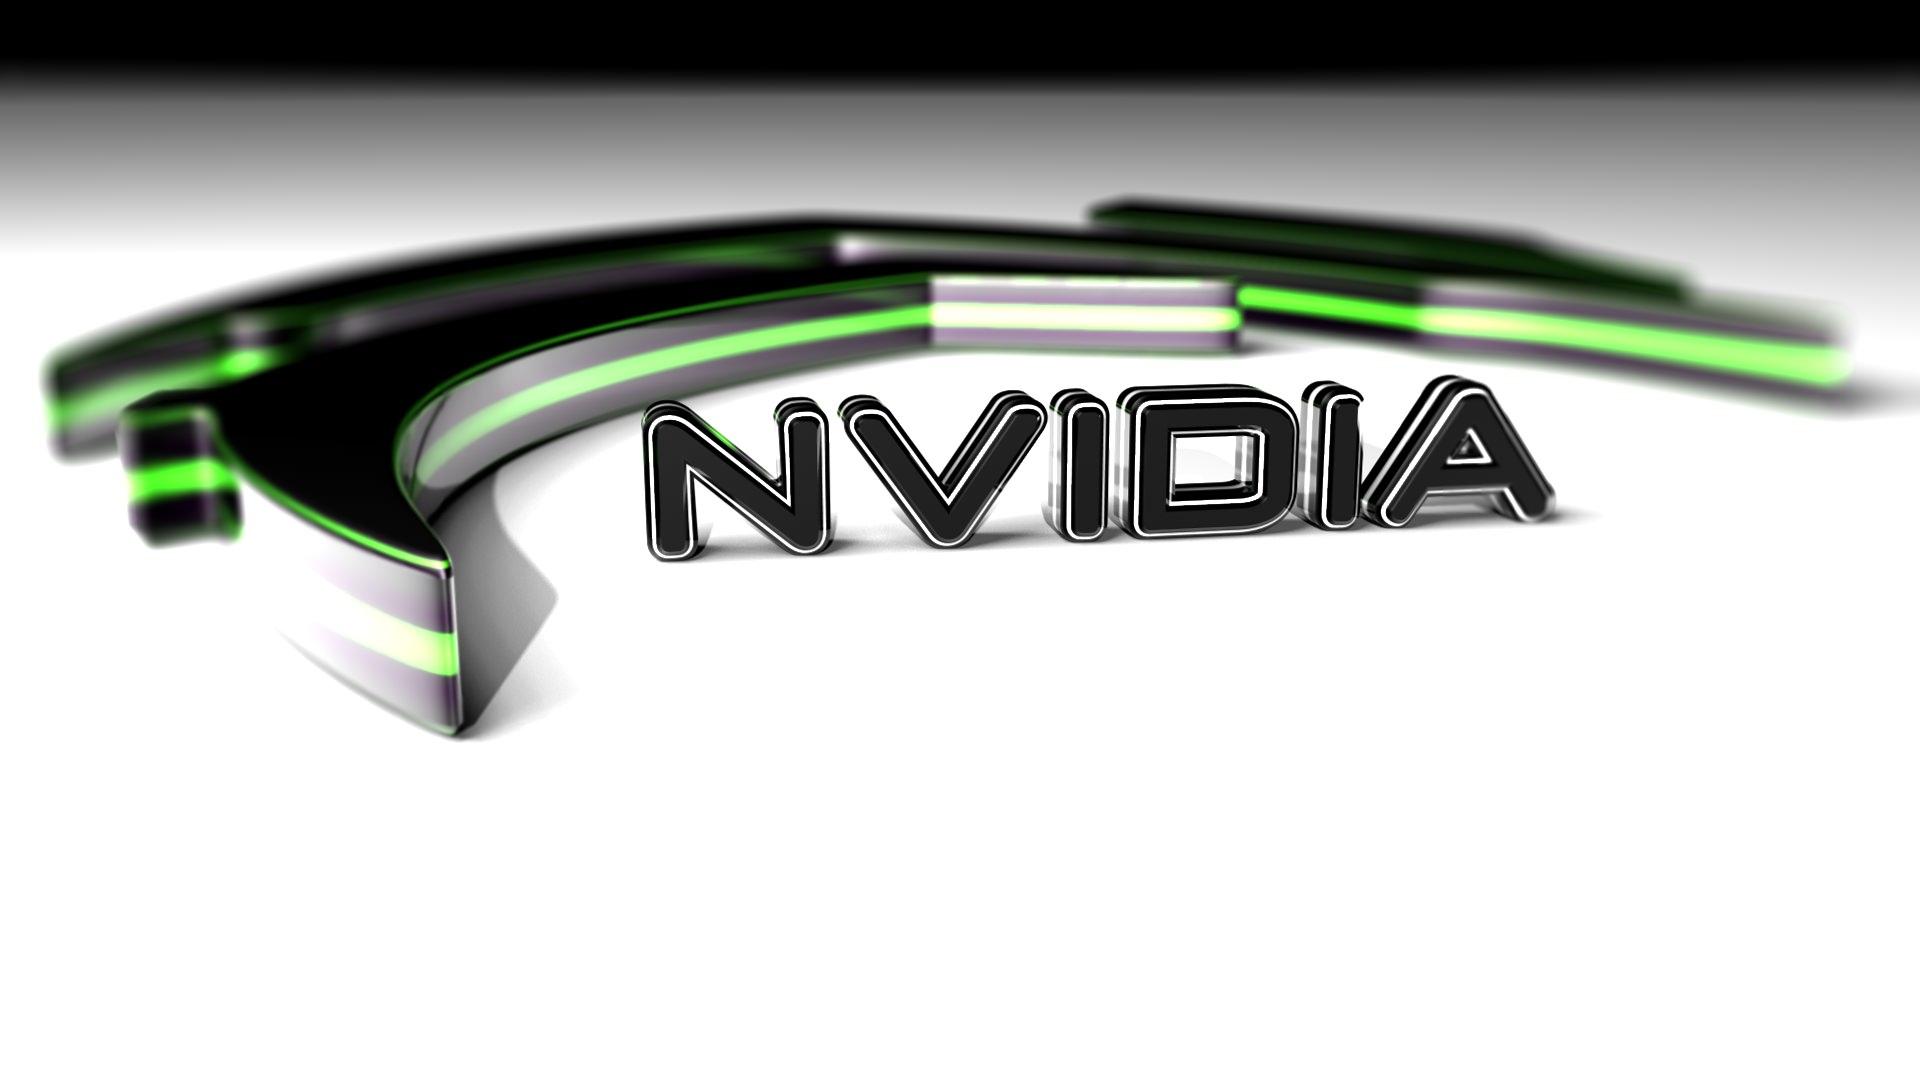 Nvidia Geforce GTX 800m HD wallpaper. HD Latest Wallpaper